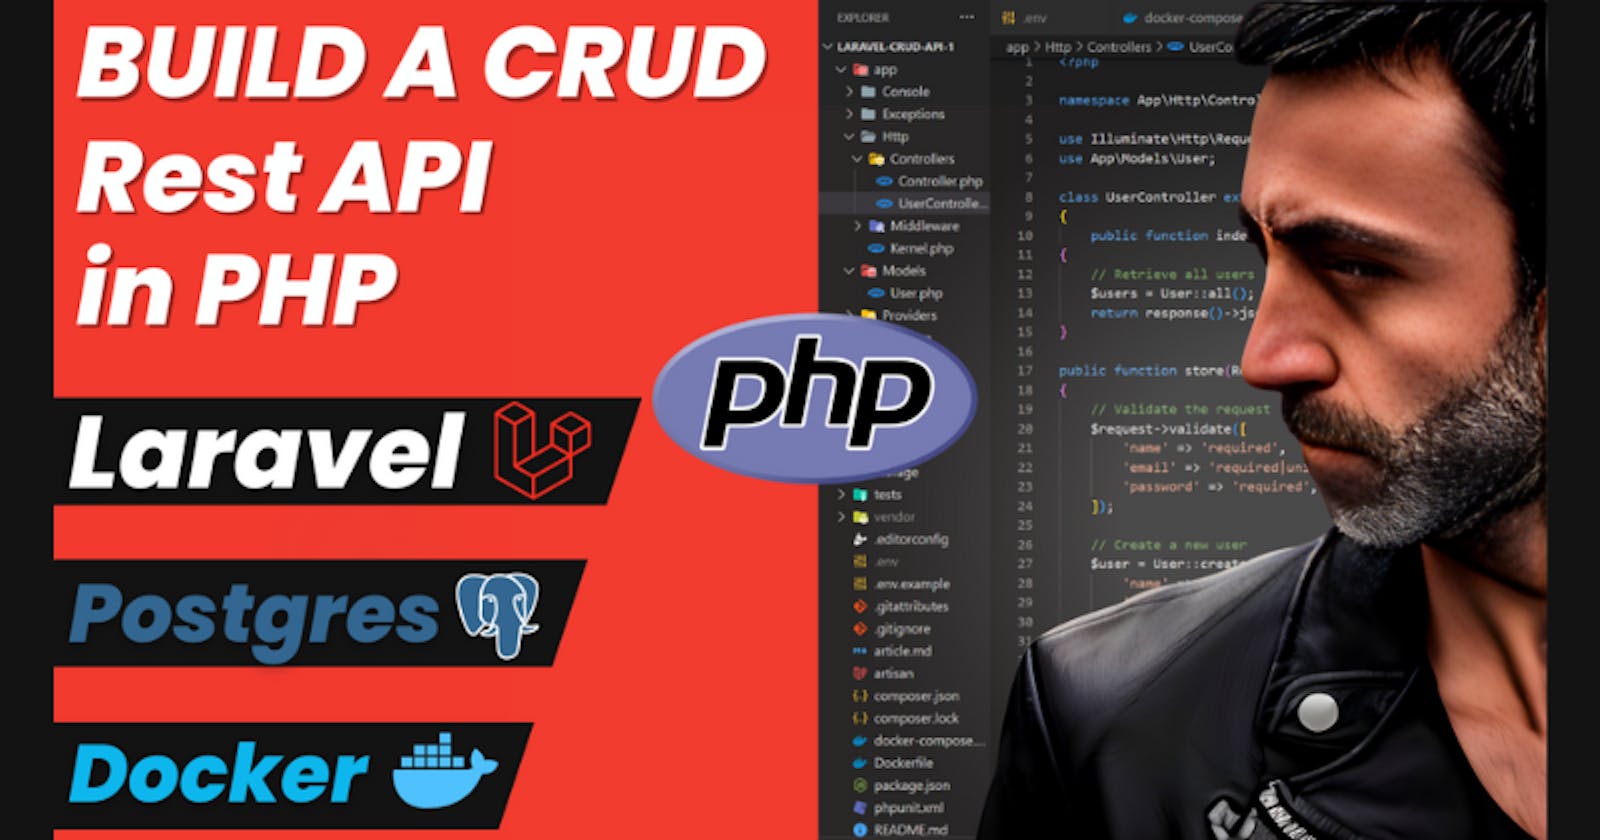 PHP CRUD Rest API, using Laravel, Composer, Postgres, Docker and Docker Compose